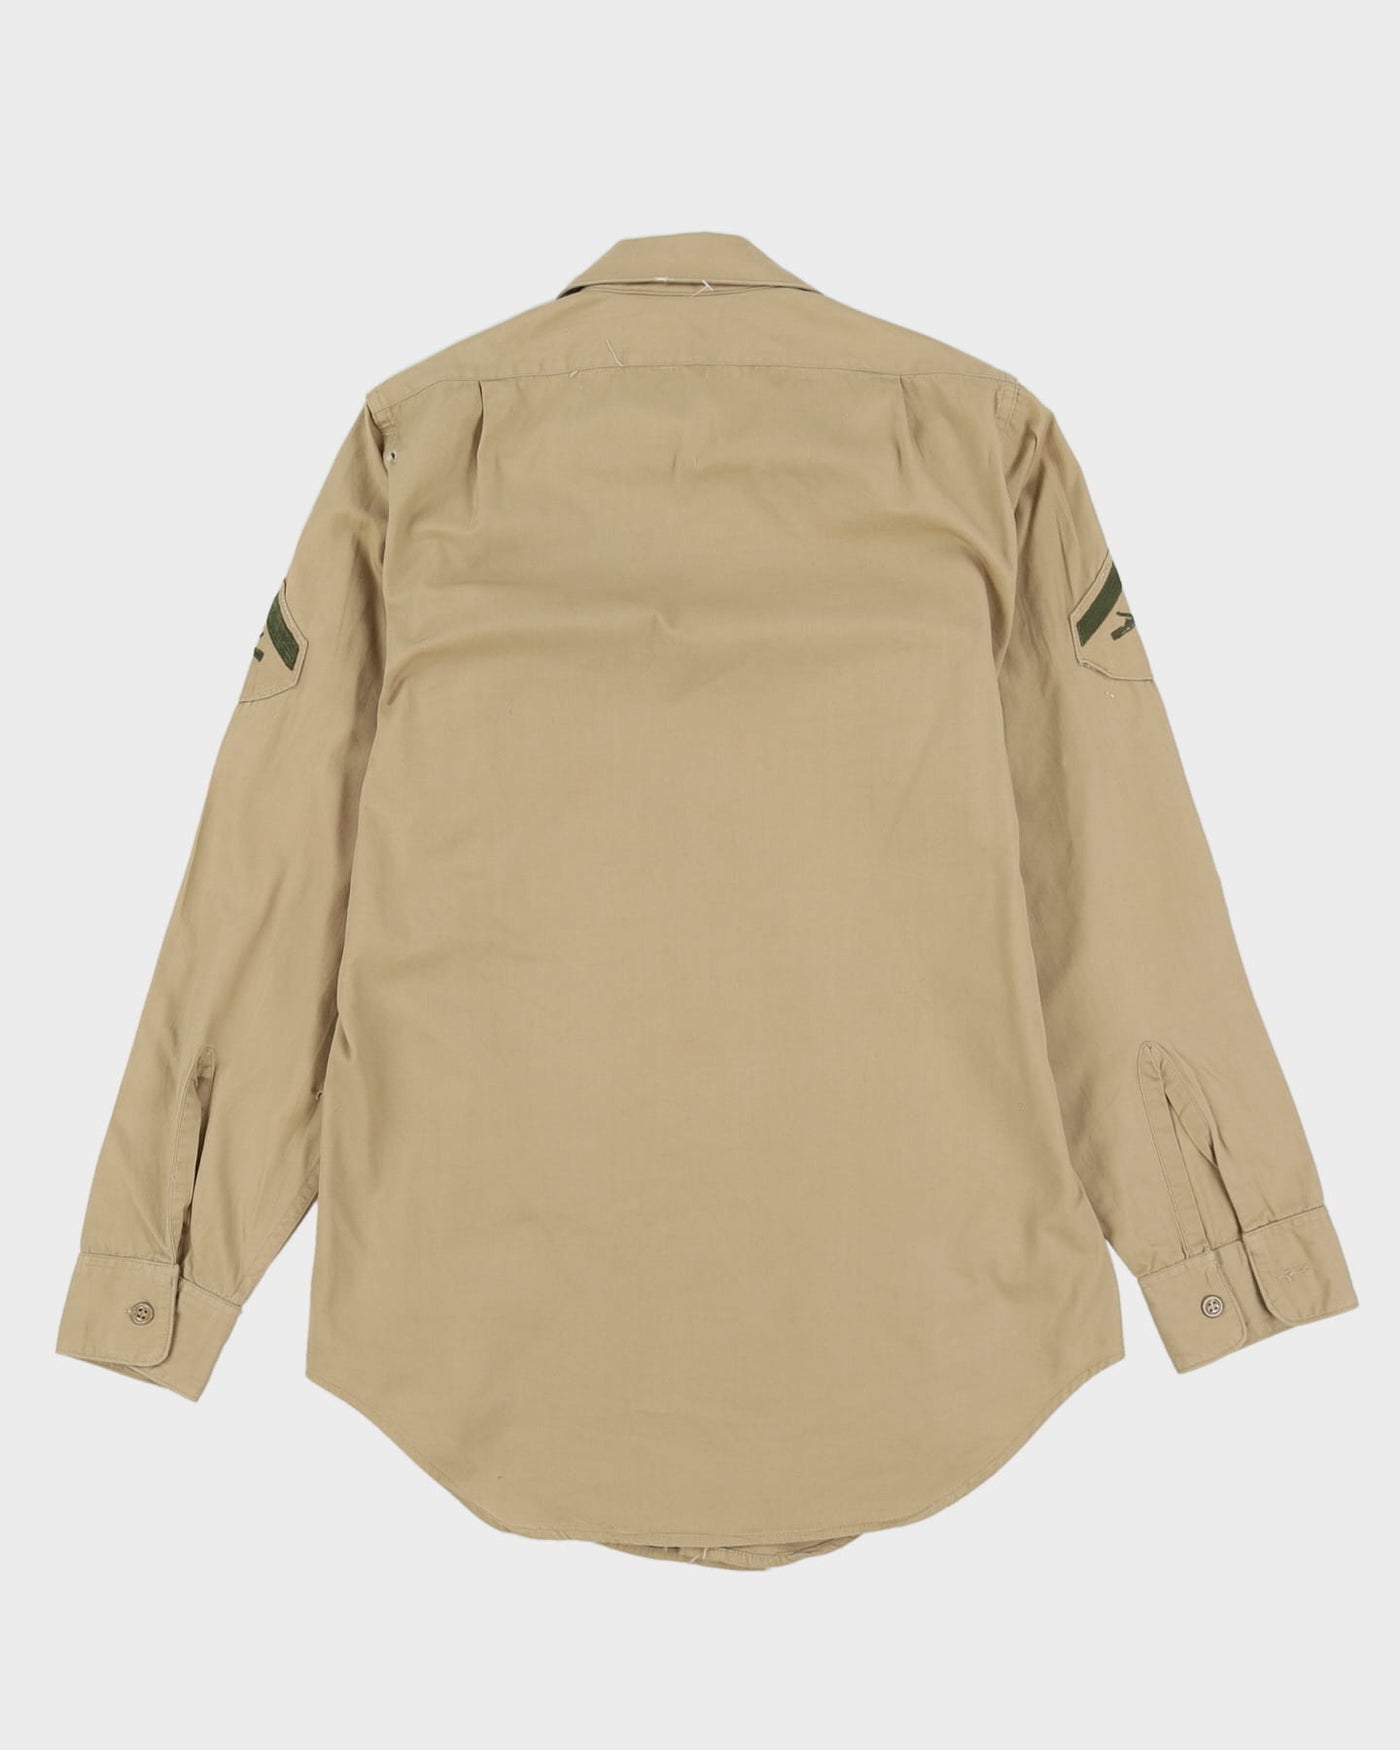 60s Vintage US Marines Khaki Dress Shirt - Medium